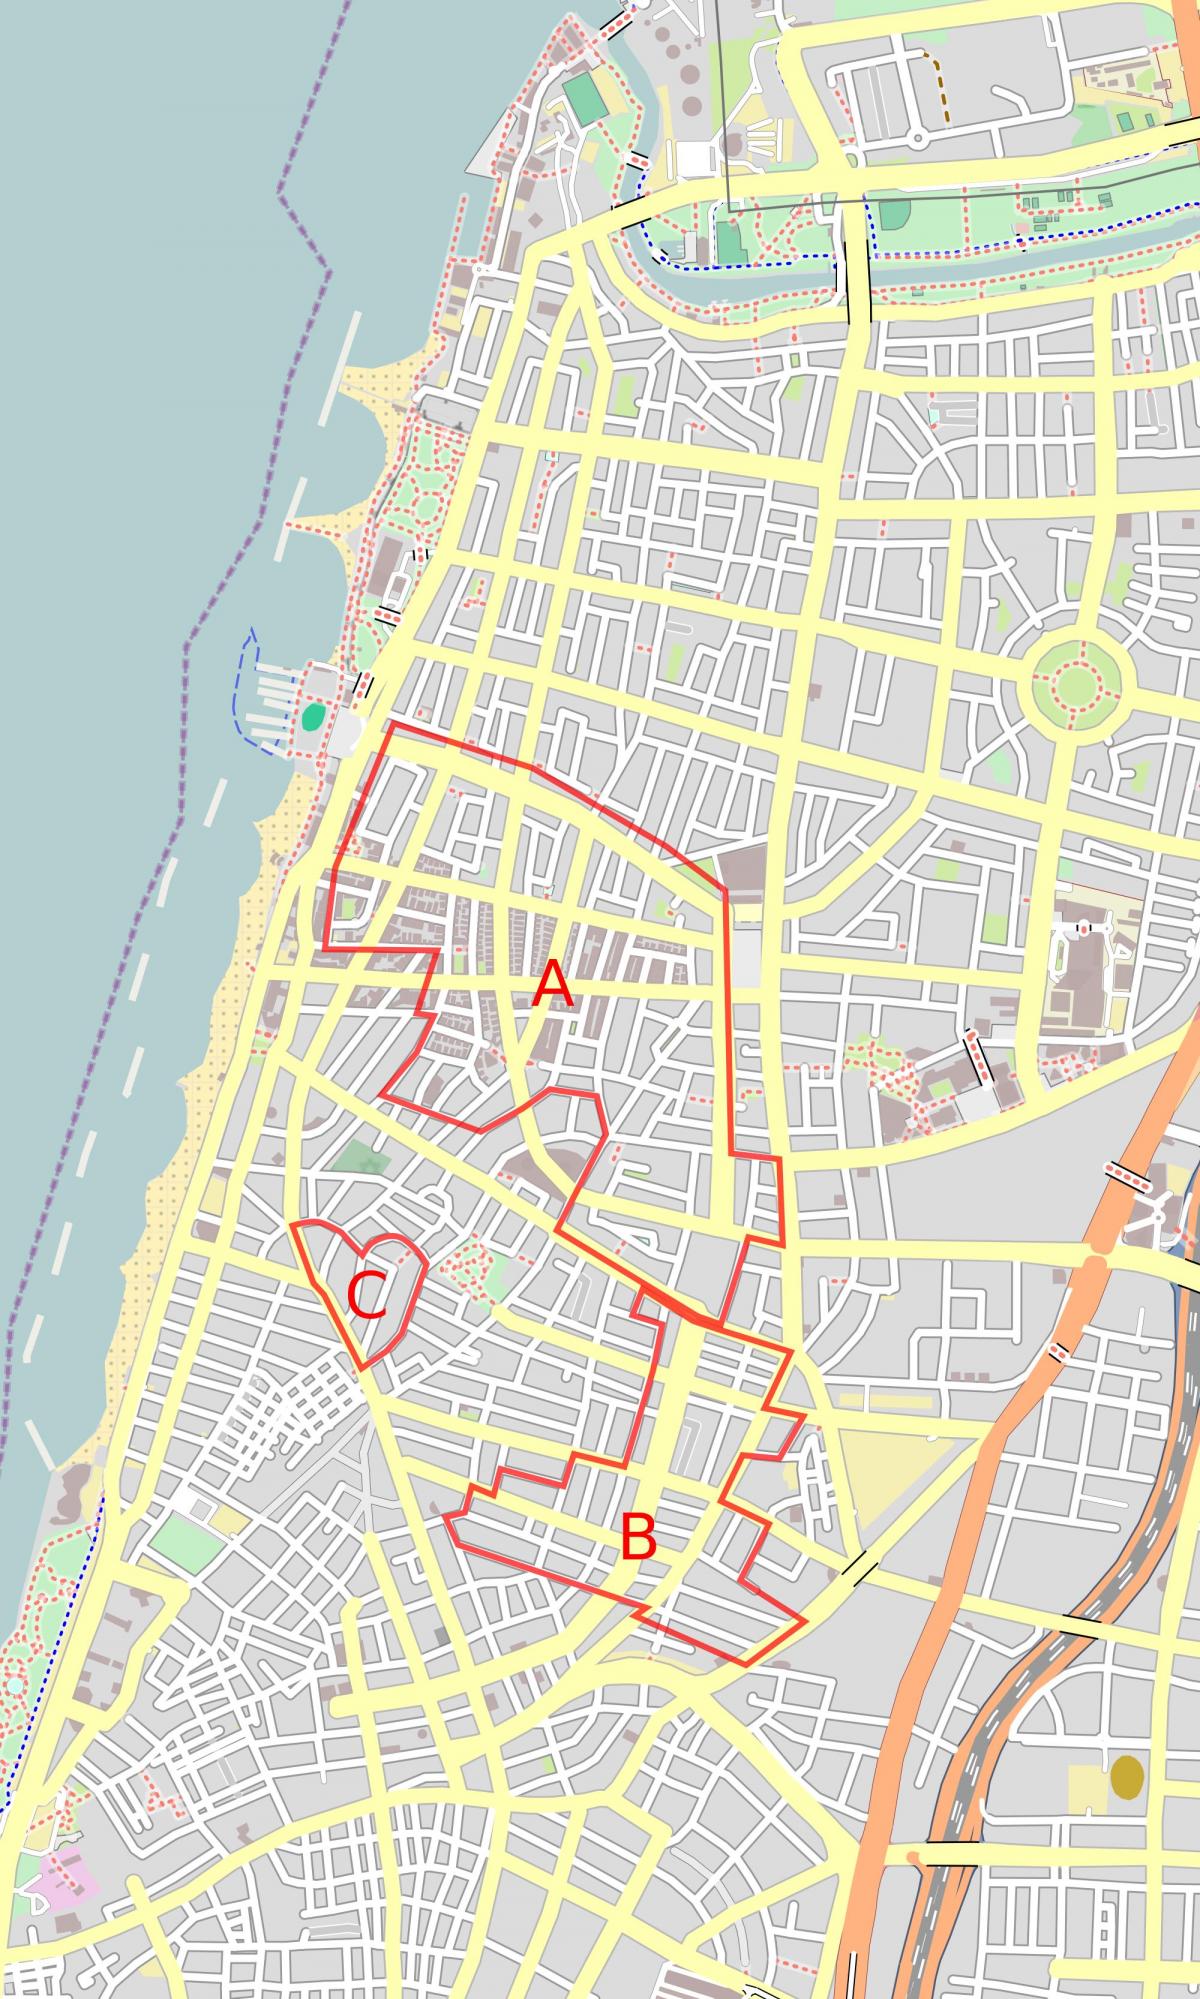 מפה של העיר הלבנה תל אביב